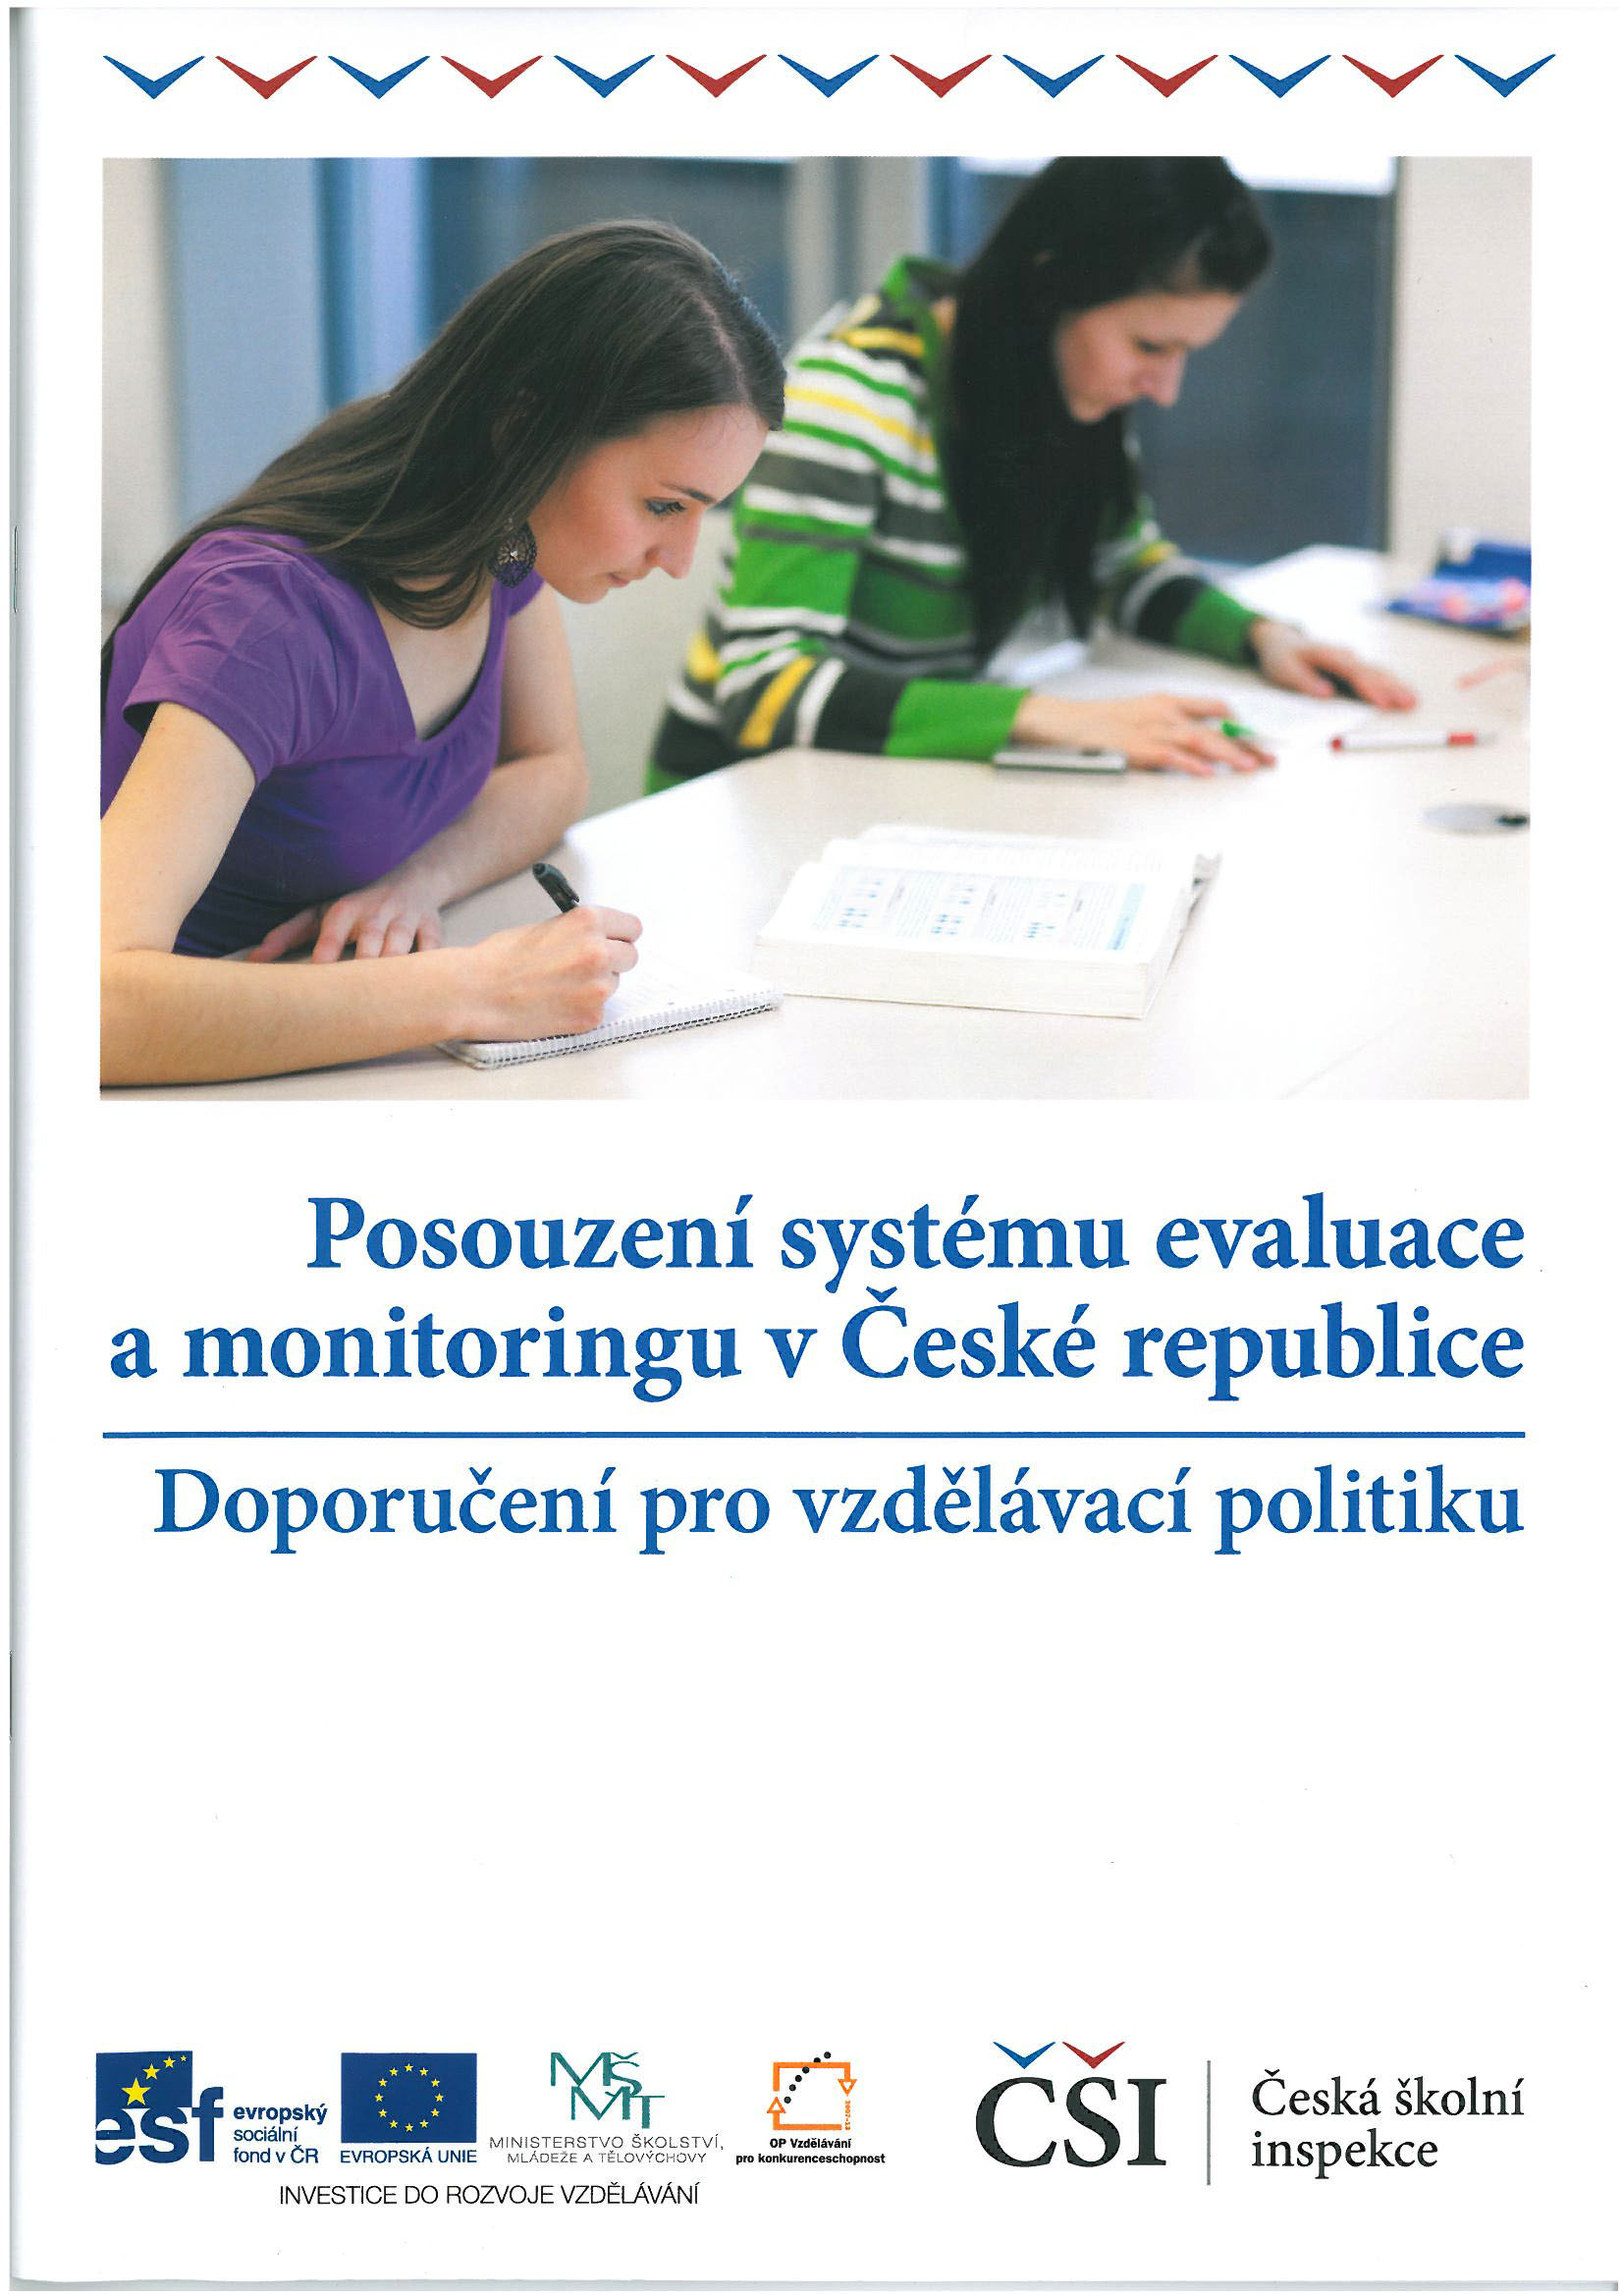 Publikace s doporučeními pro vzdělávací politiku - monitoring a evaluace